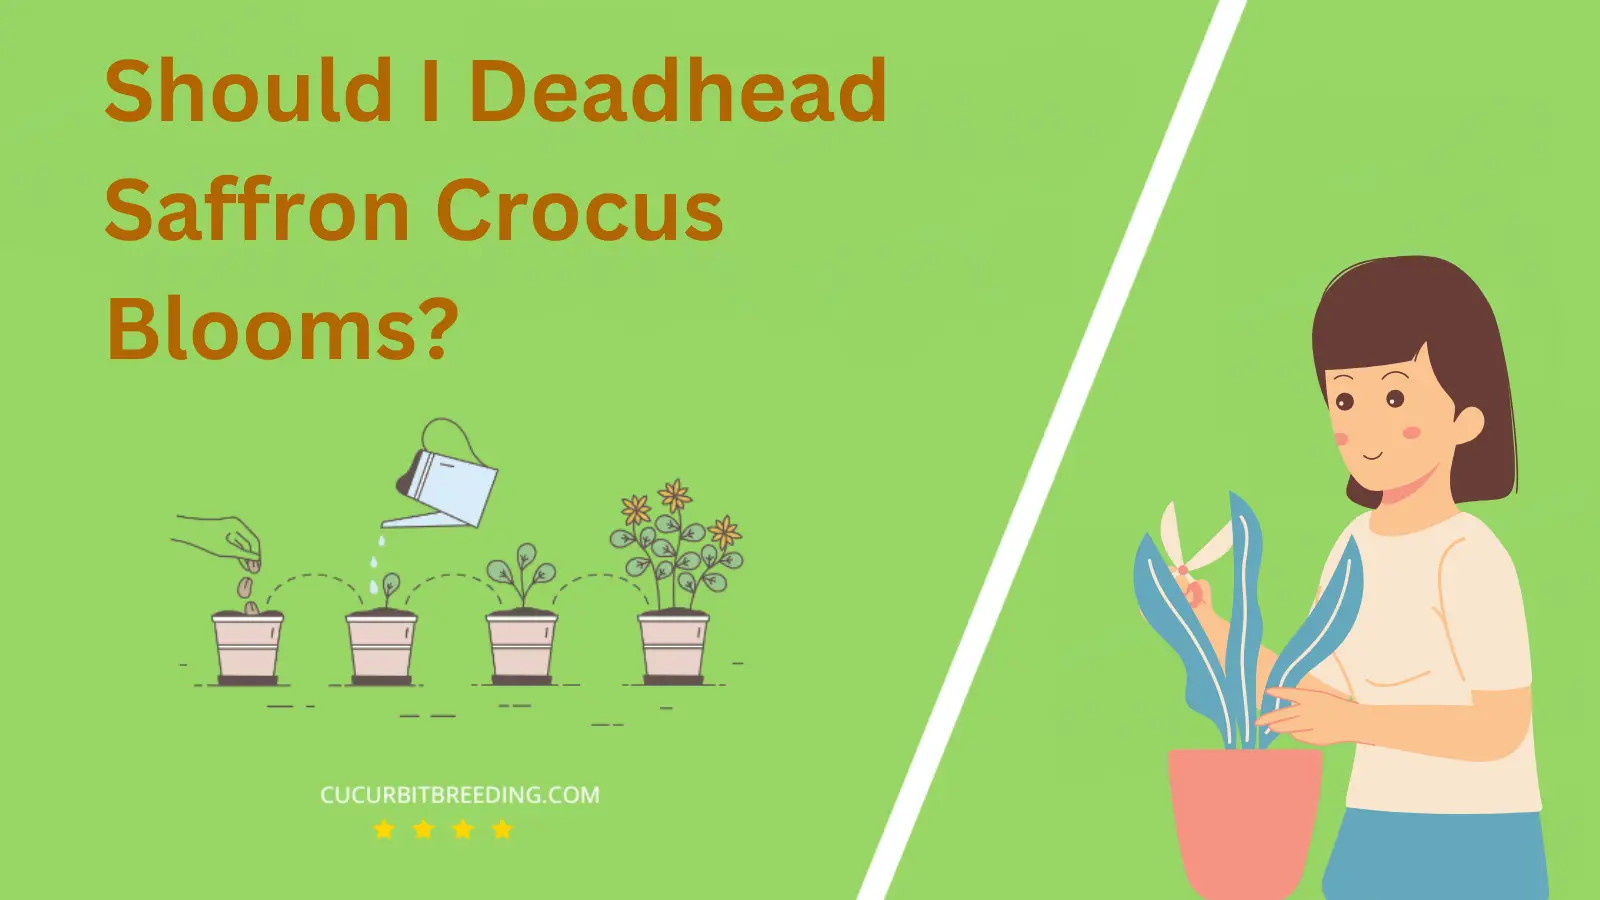 Should I Deadhead Saffron Crocus Blooms?